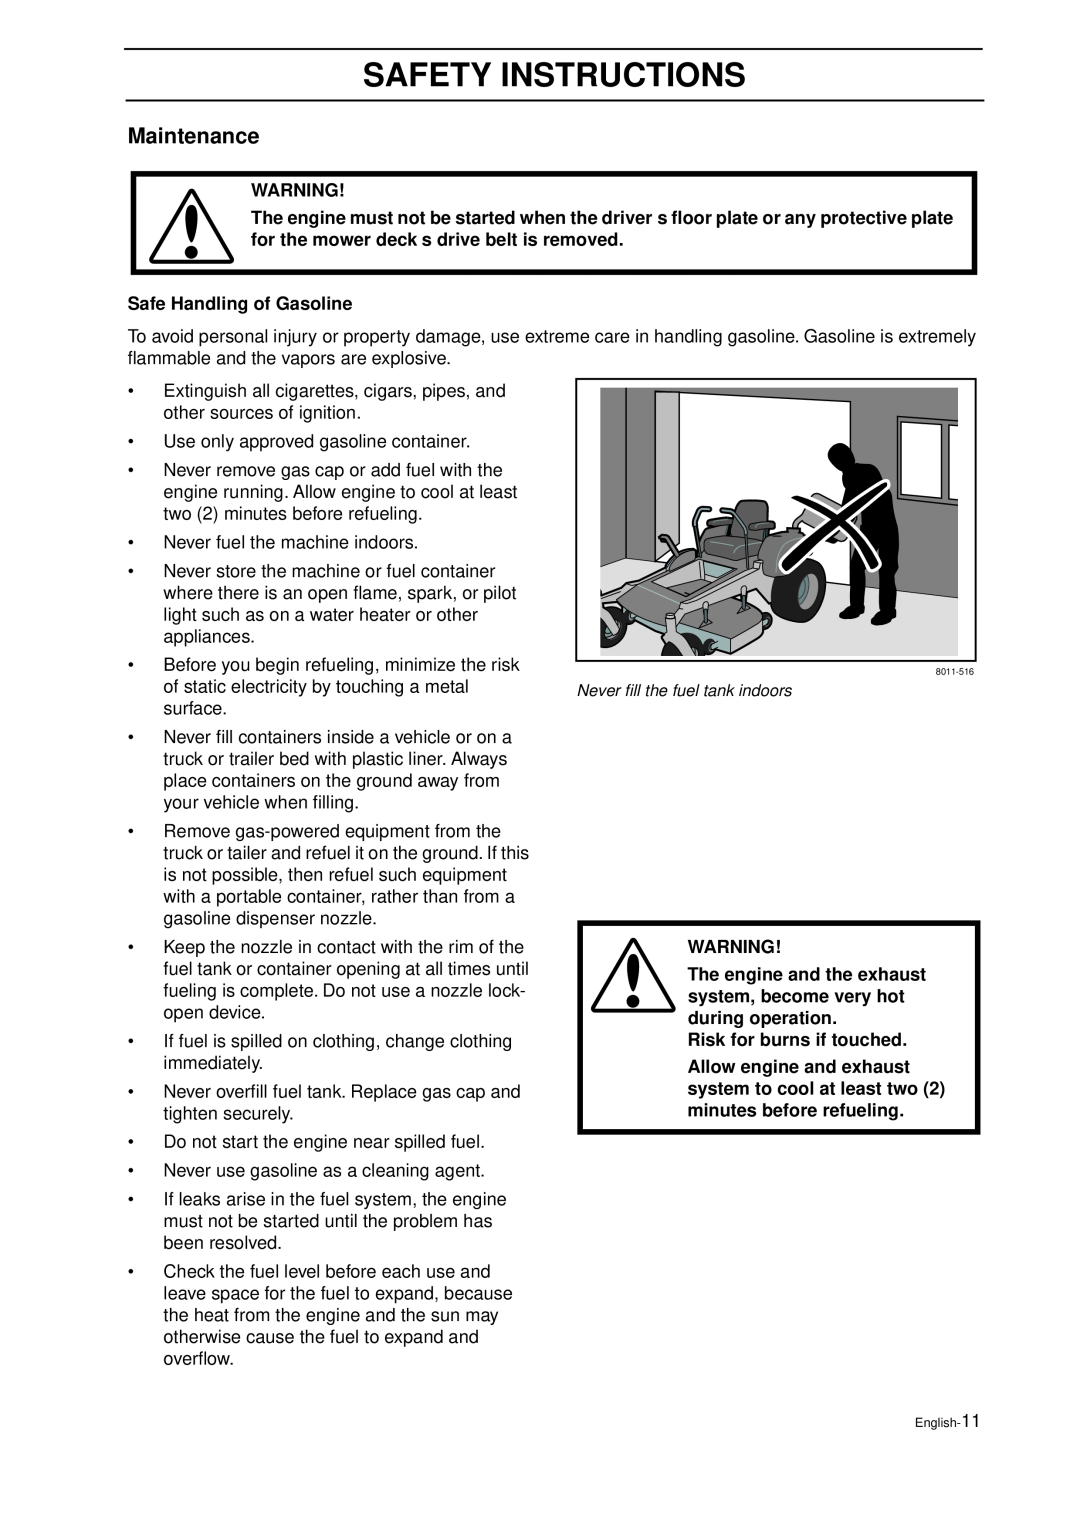 Husqvarna IZ 21 manual Maintenance, Safe Handling of Gasoline, Risk for burns if touched, Safety Instructions 